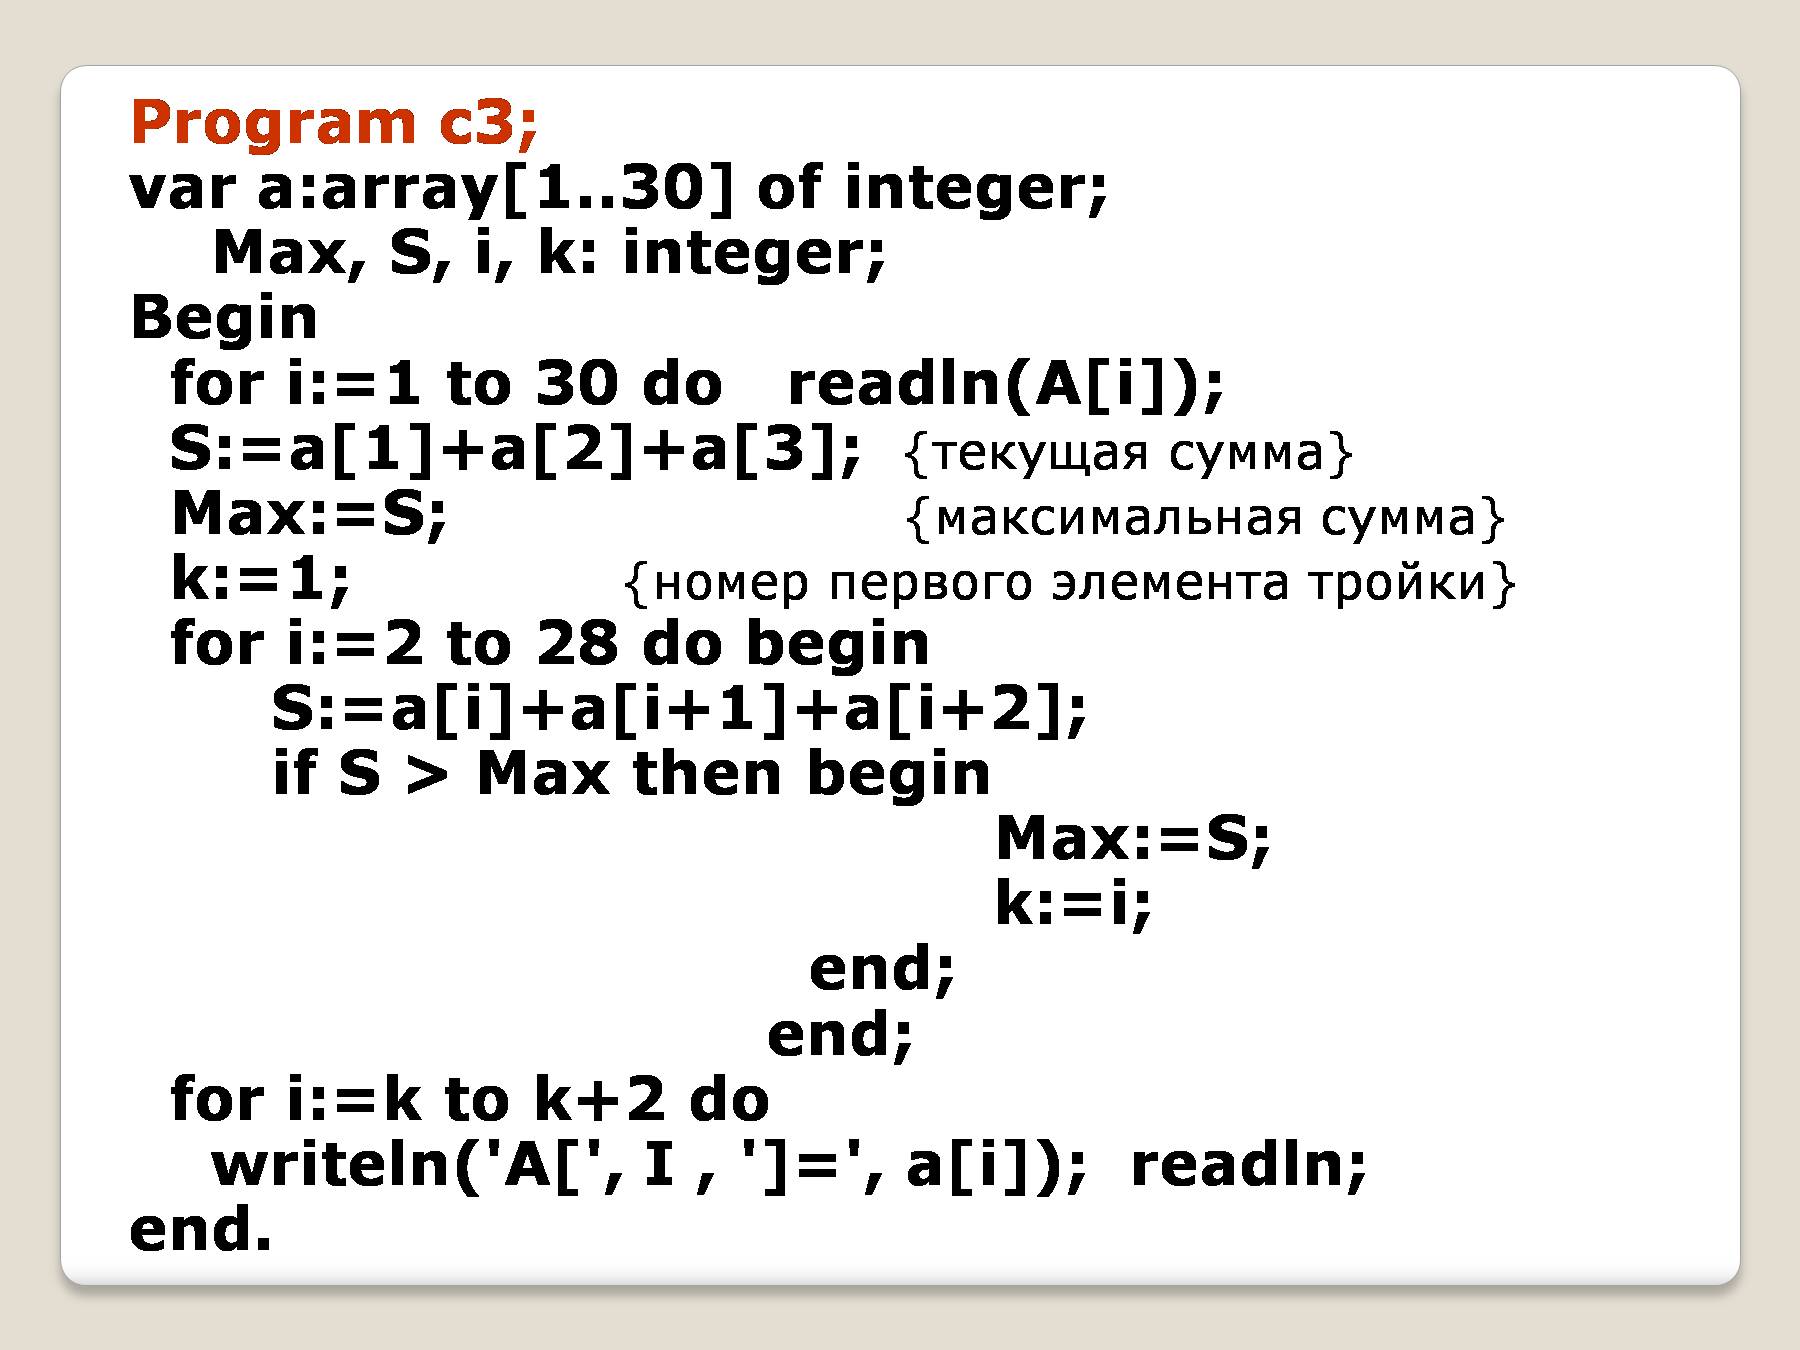 Var int c. Var i. a. Max:integer begin readln(Max). Var array. I, Max: integer. Integer Max value.